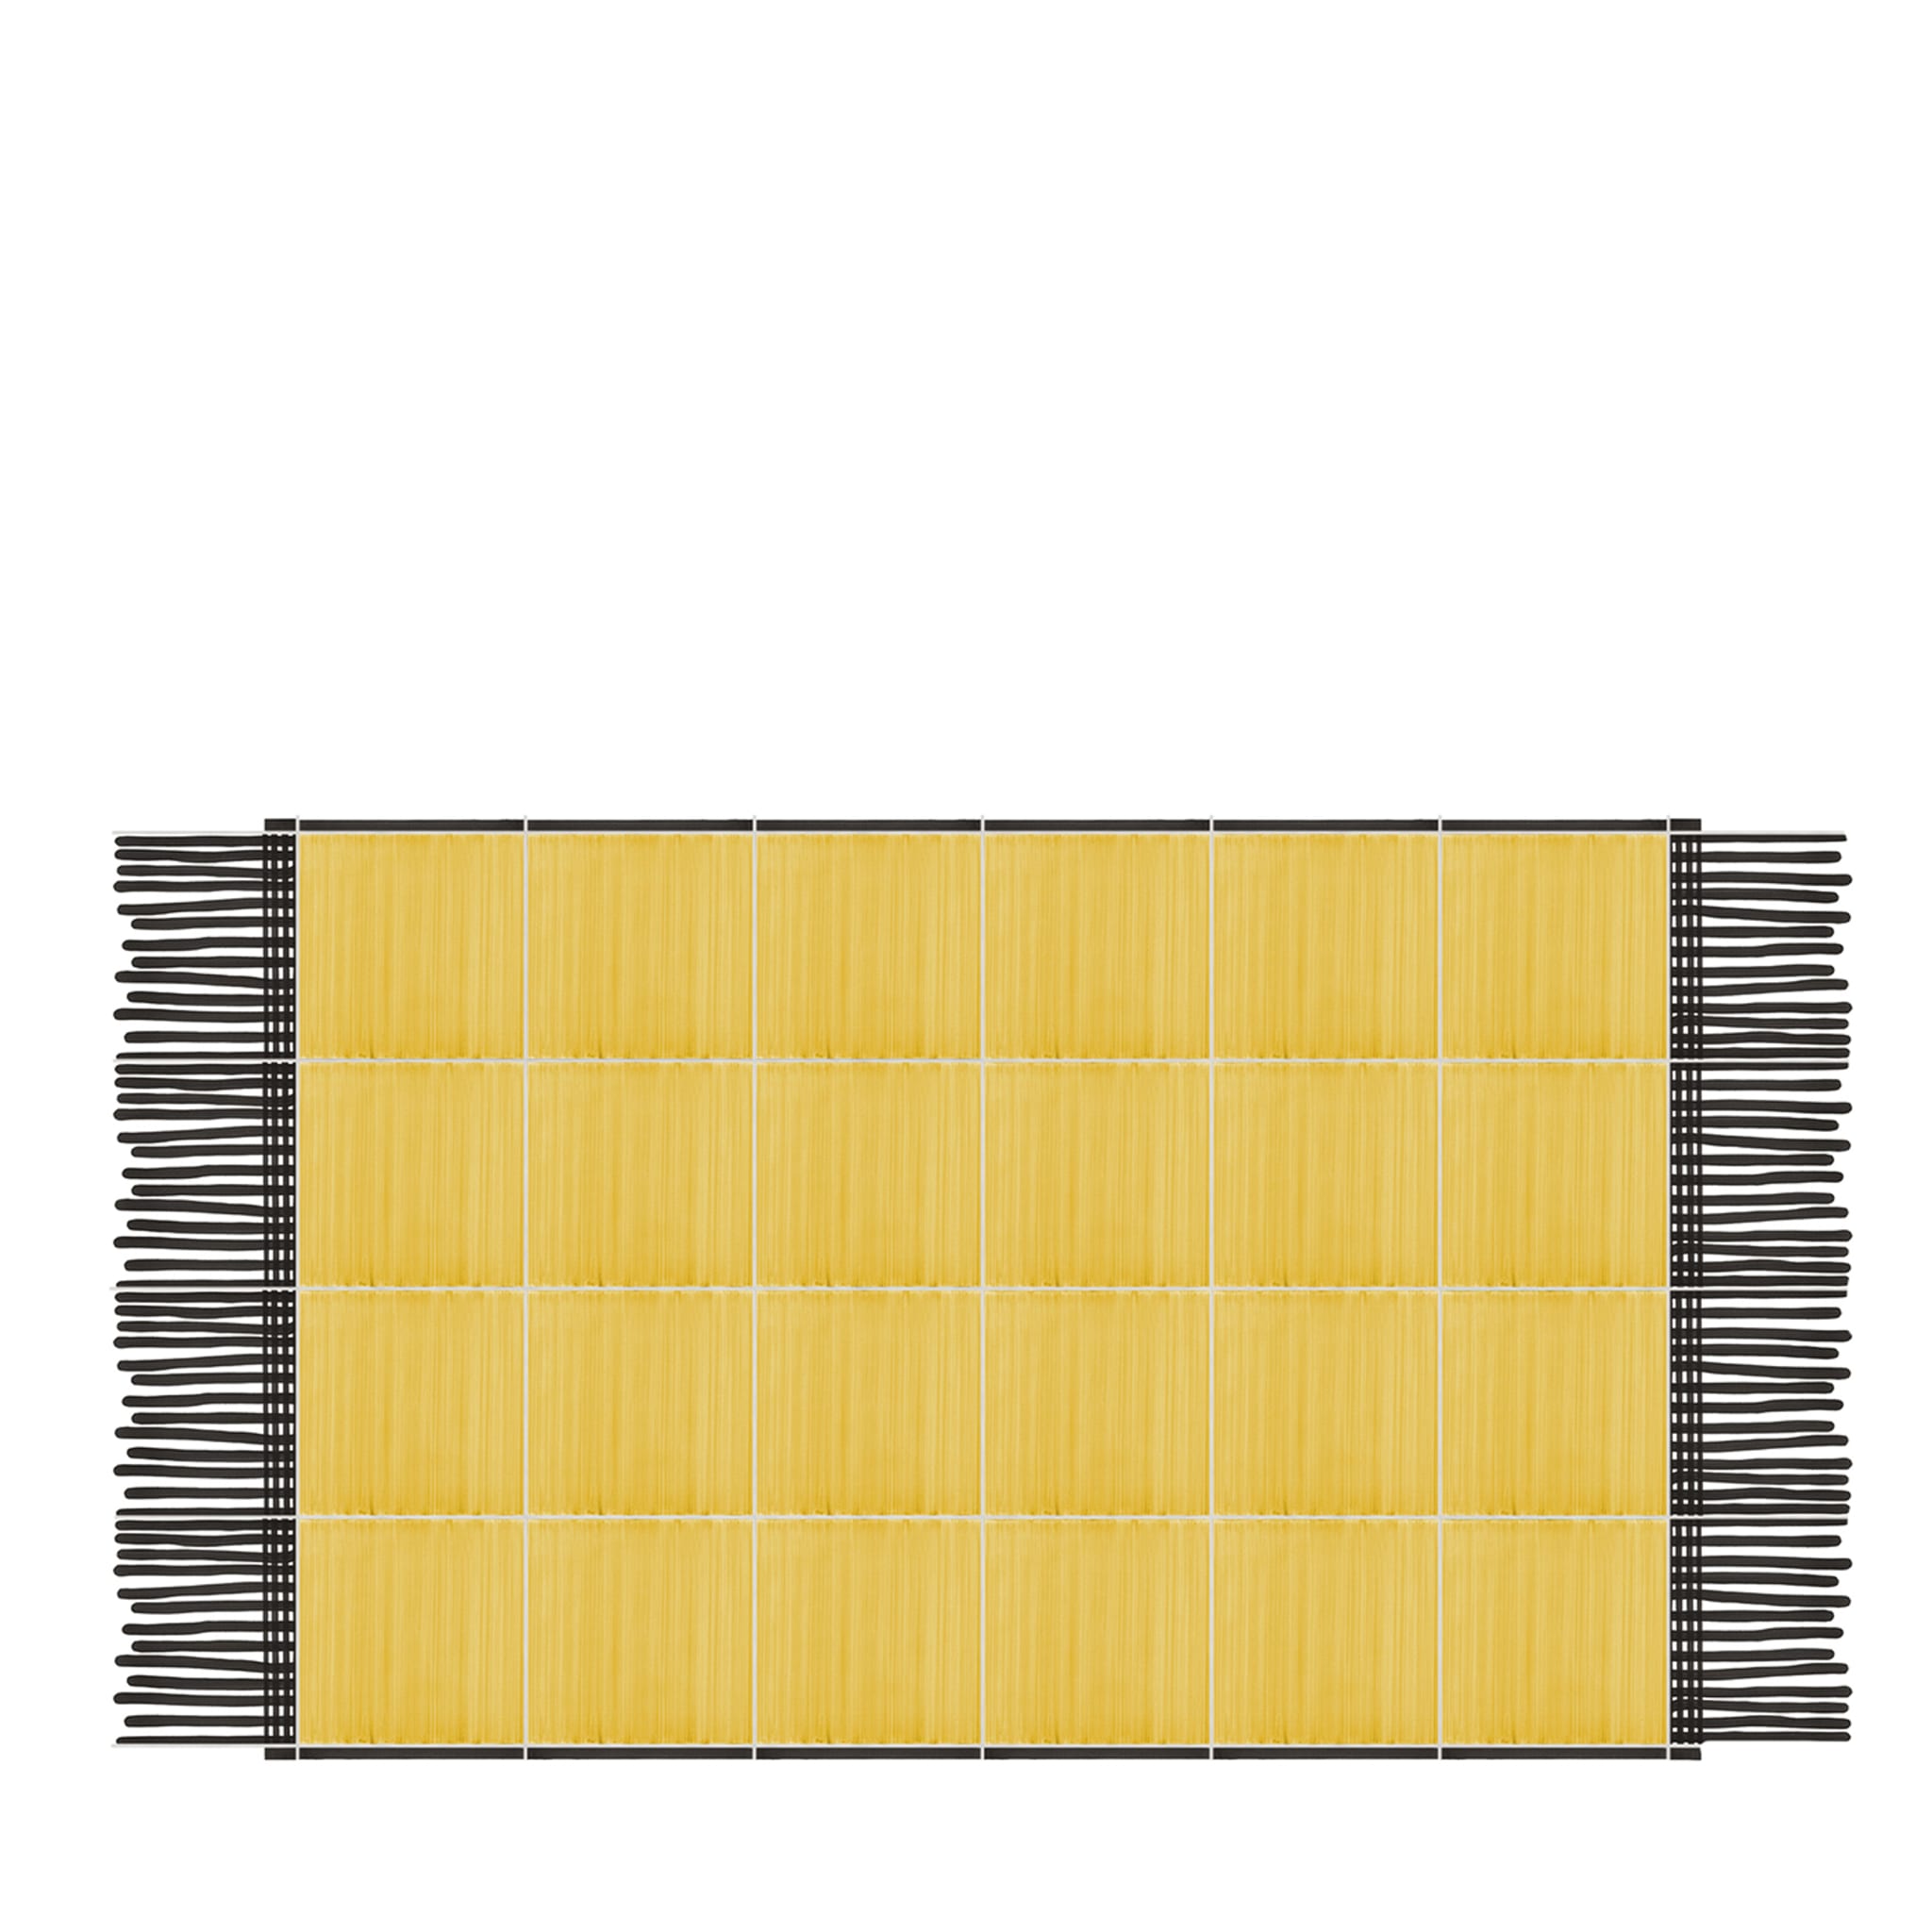 Carpet Total Yellow Ceramic Composition by Giuliano Andrea dell’Uva 160 x 120 - Main view